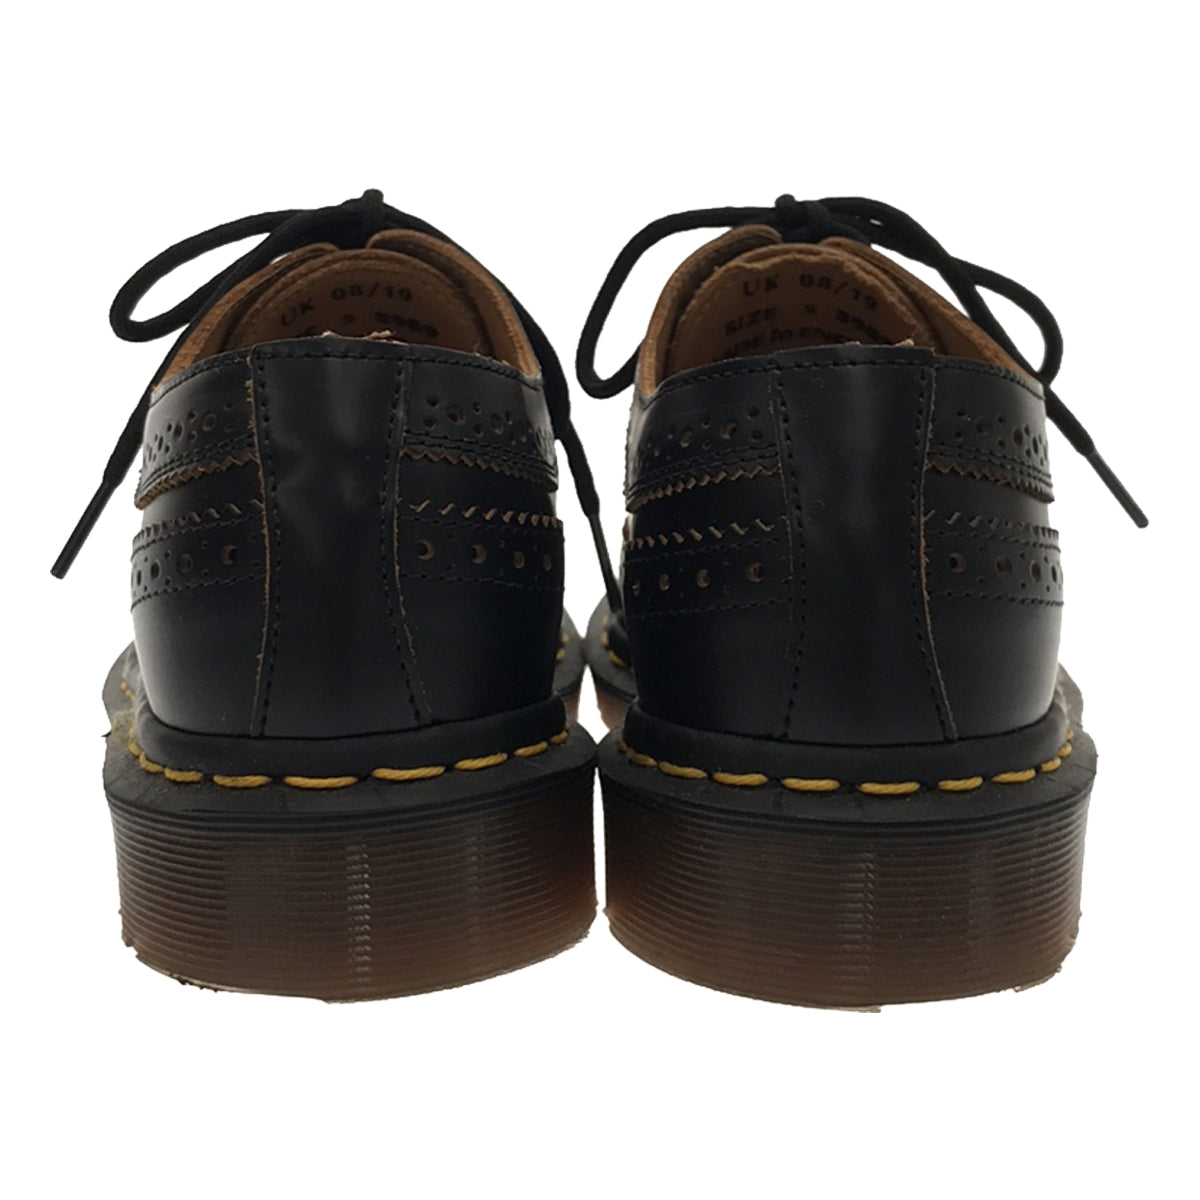 経典 3989 Dr.Martens UK5 キルトシューズ MET KLTE 靴 